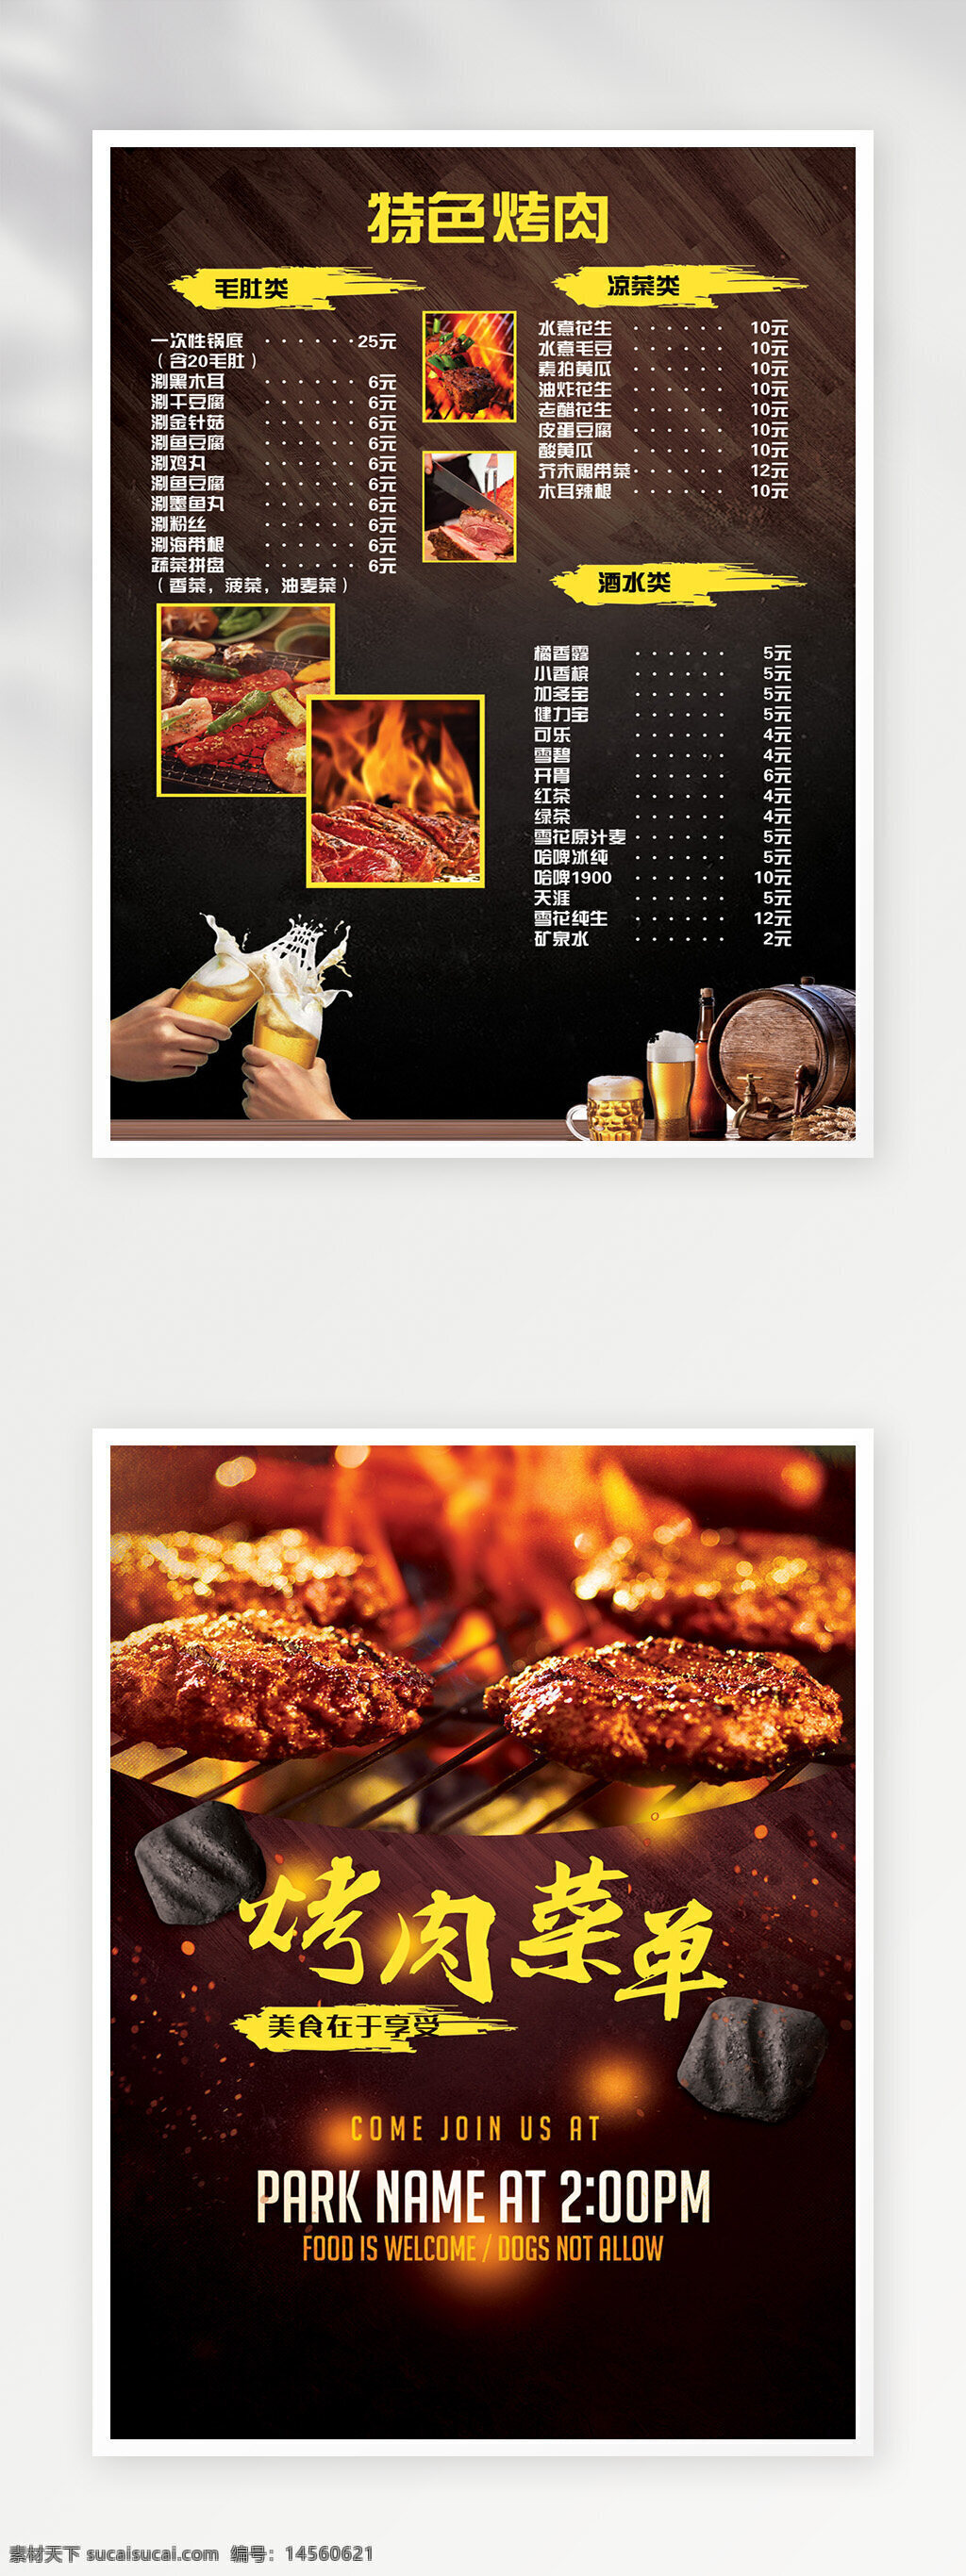 菜单 菜单广告 菜单模板 点餐单 菜单设计 菜谱 菜单菜谱 价目表 菜谱设计